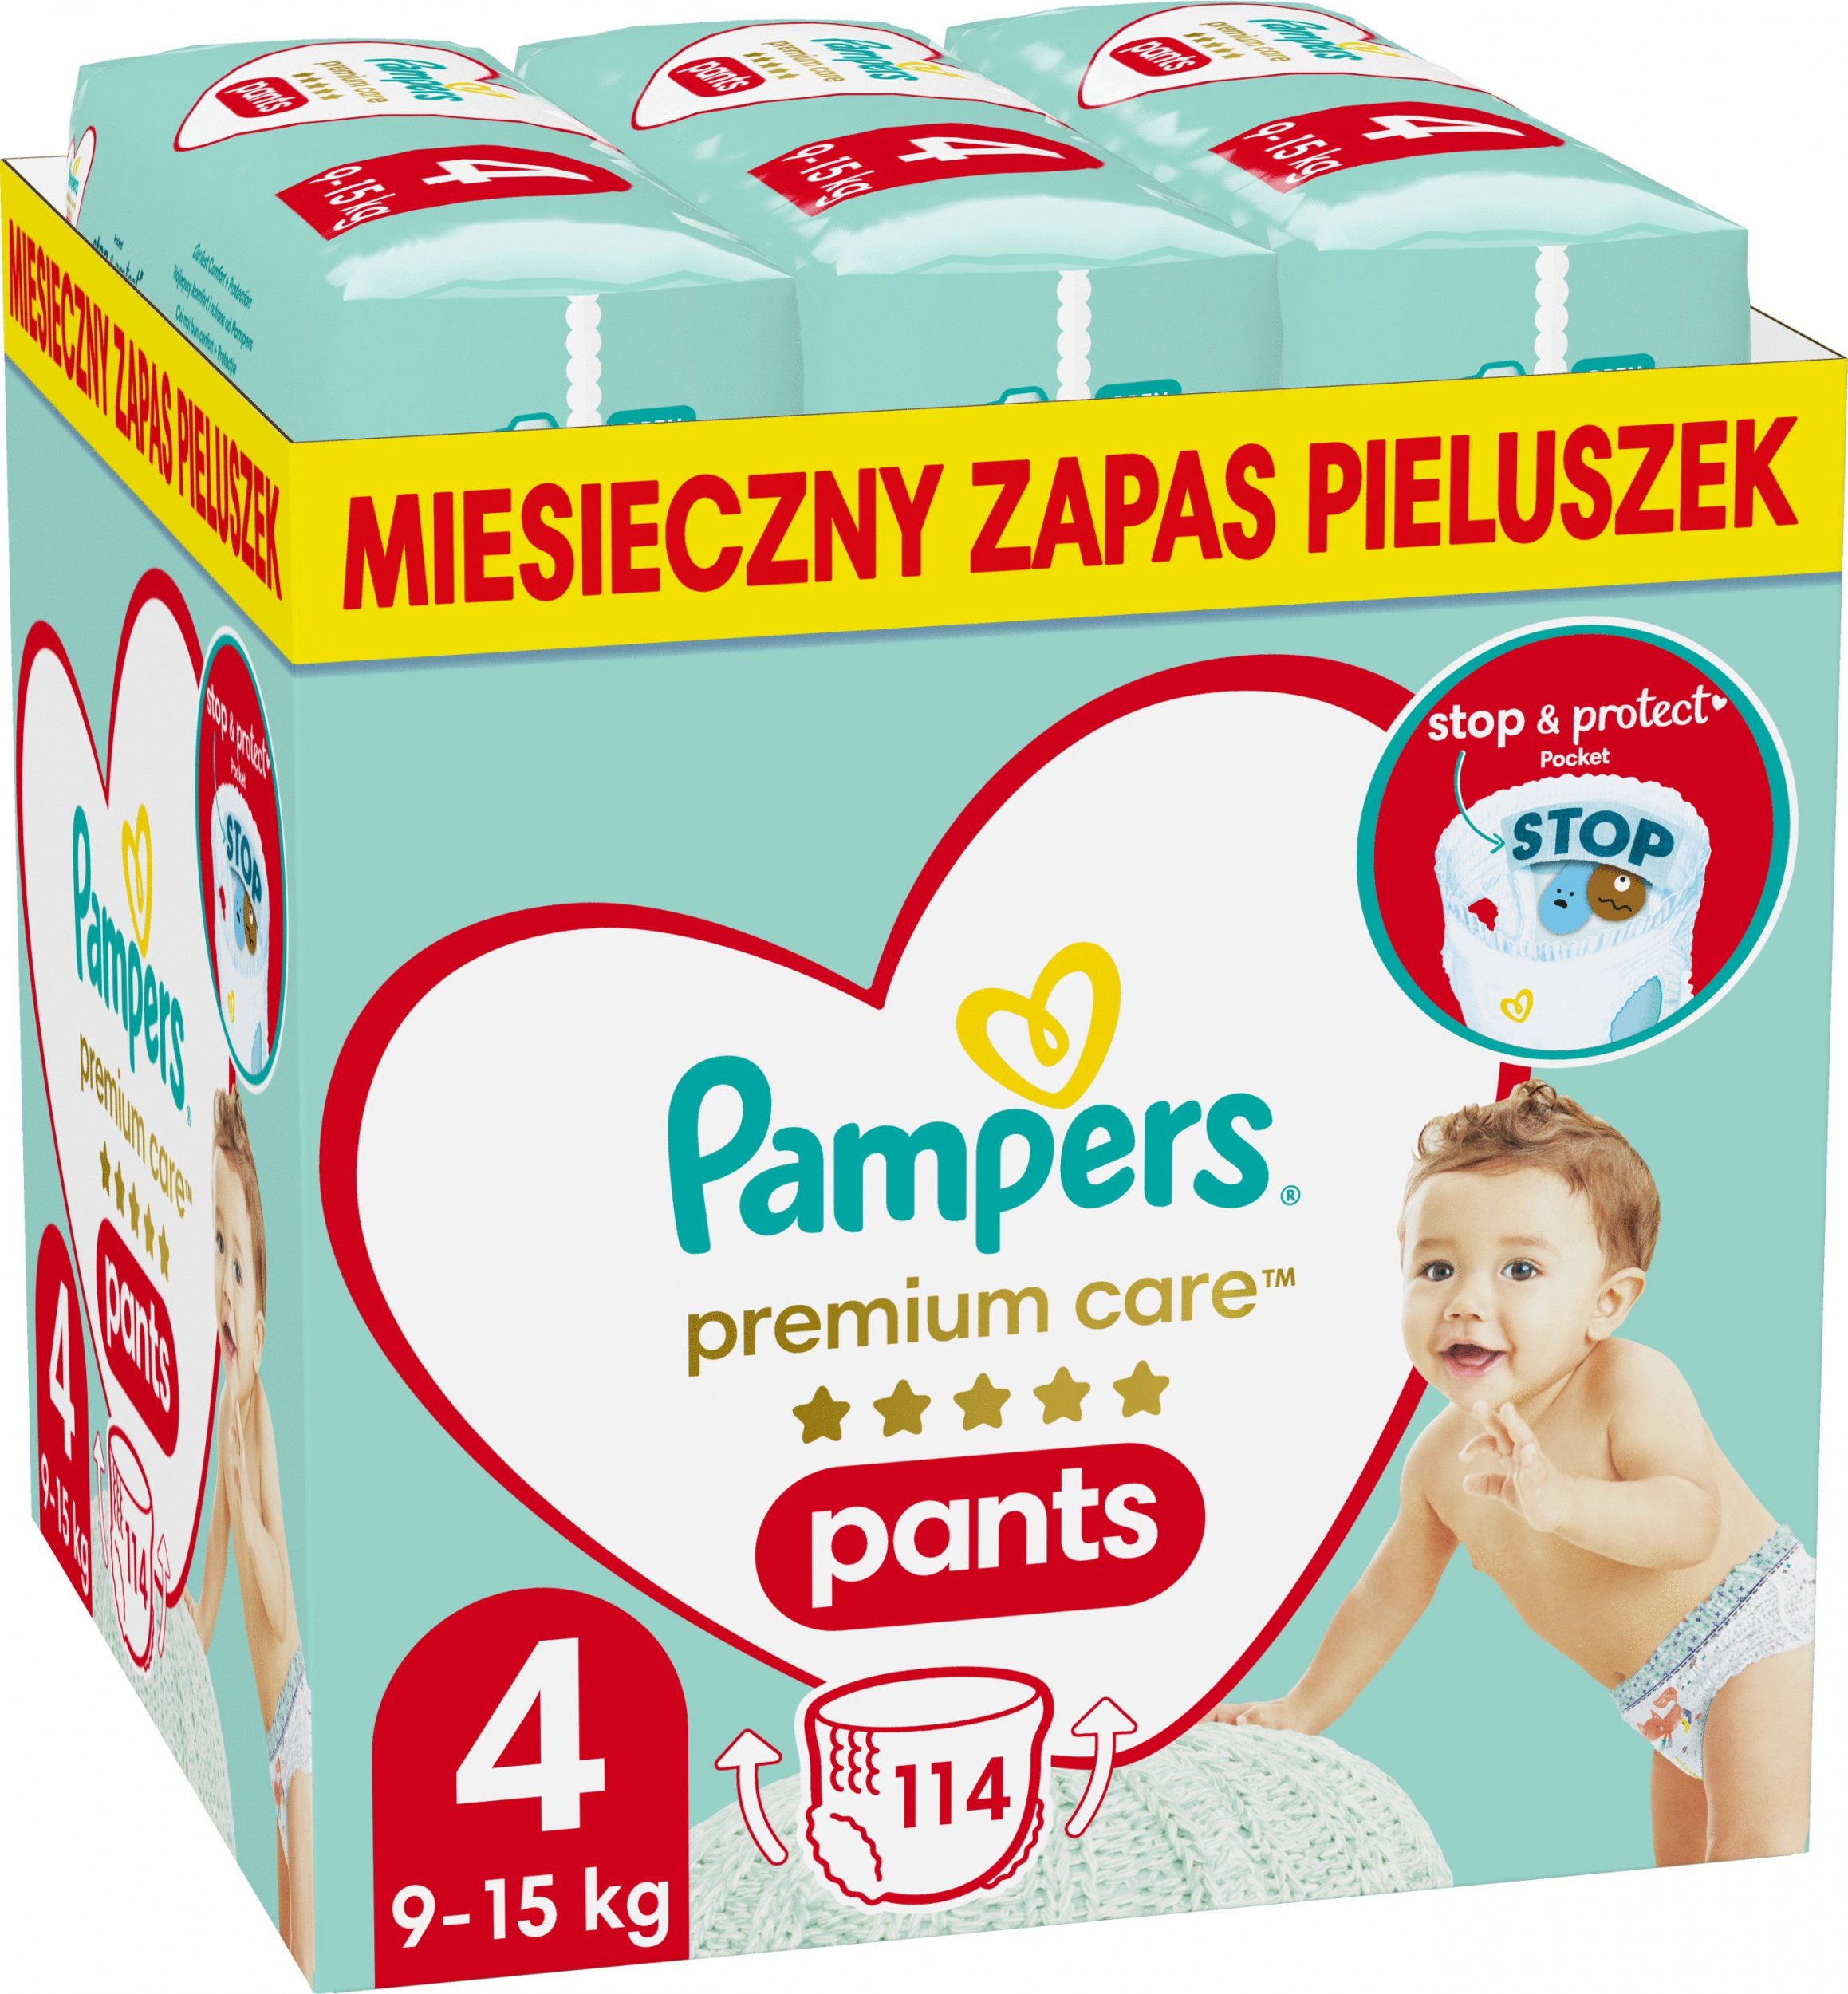 Pieluszki Pampers Pants Premium Care 4, 9-15 kg, 114 szt.